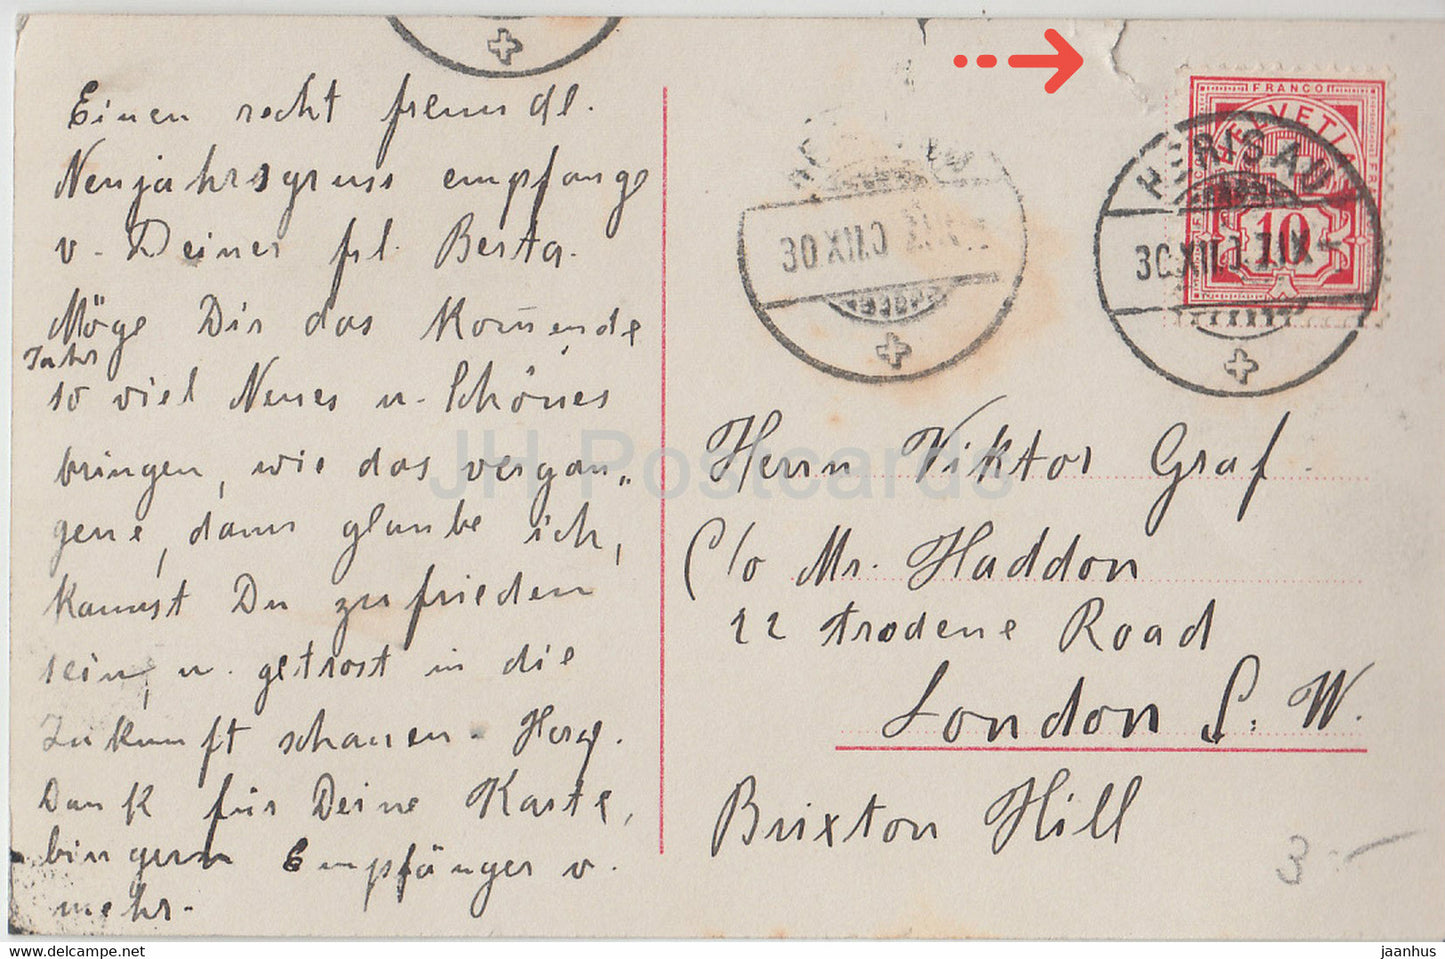 Carte de vœux du Nouvel An - Prosit Neujahr - femme - PMB 4281/2 - carte postale ancienne - Allemagne - utilisé